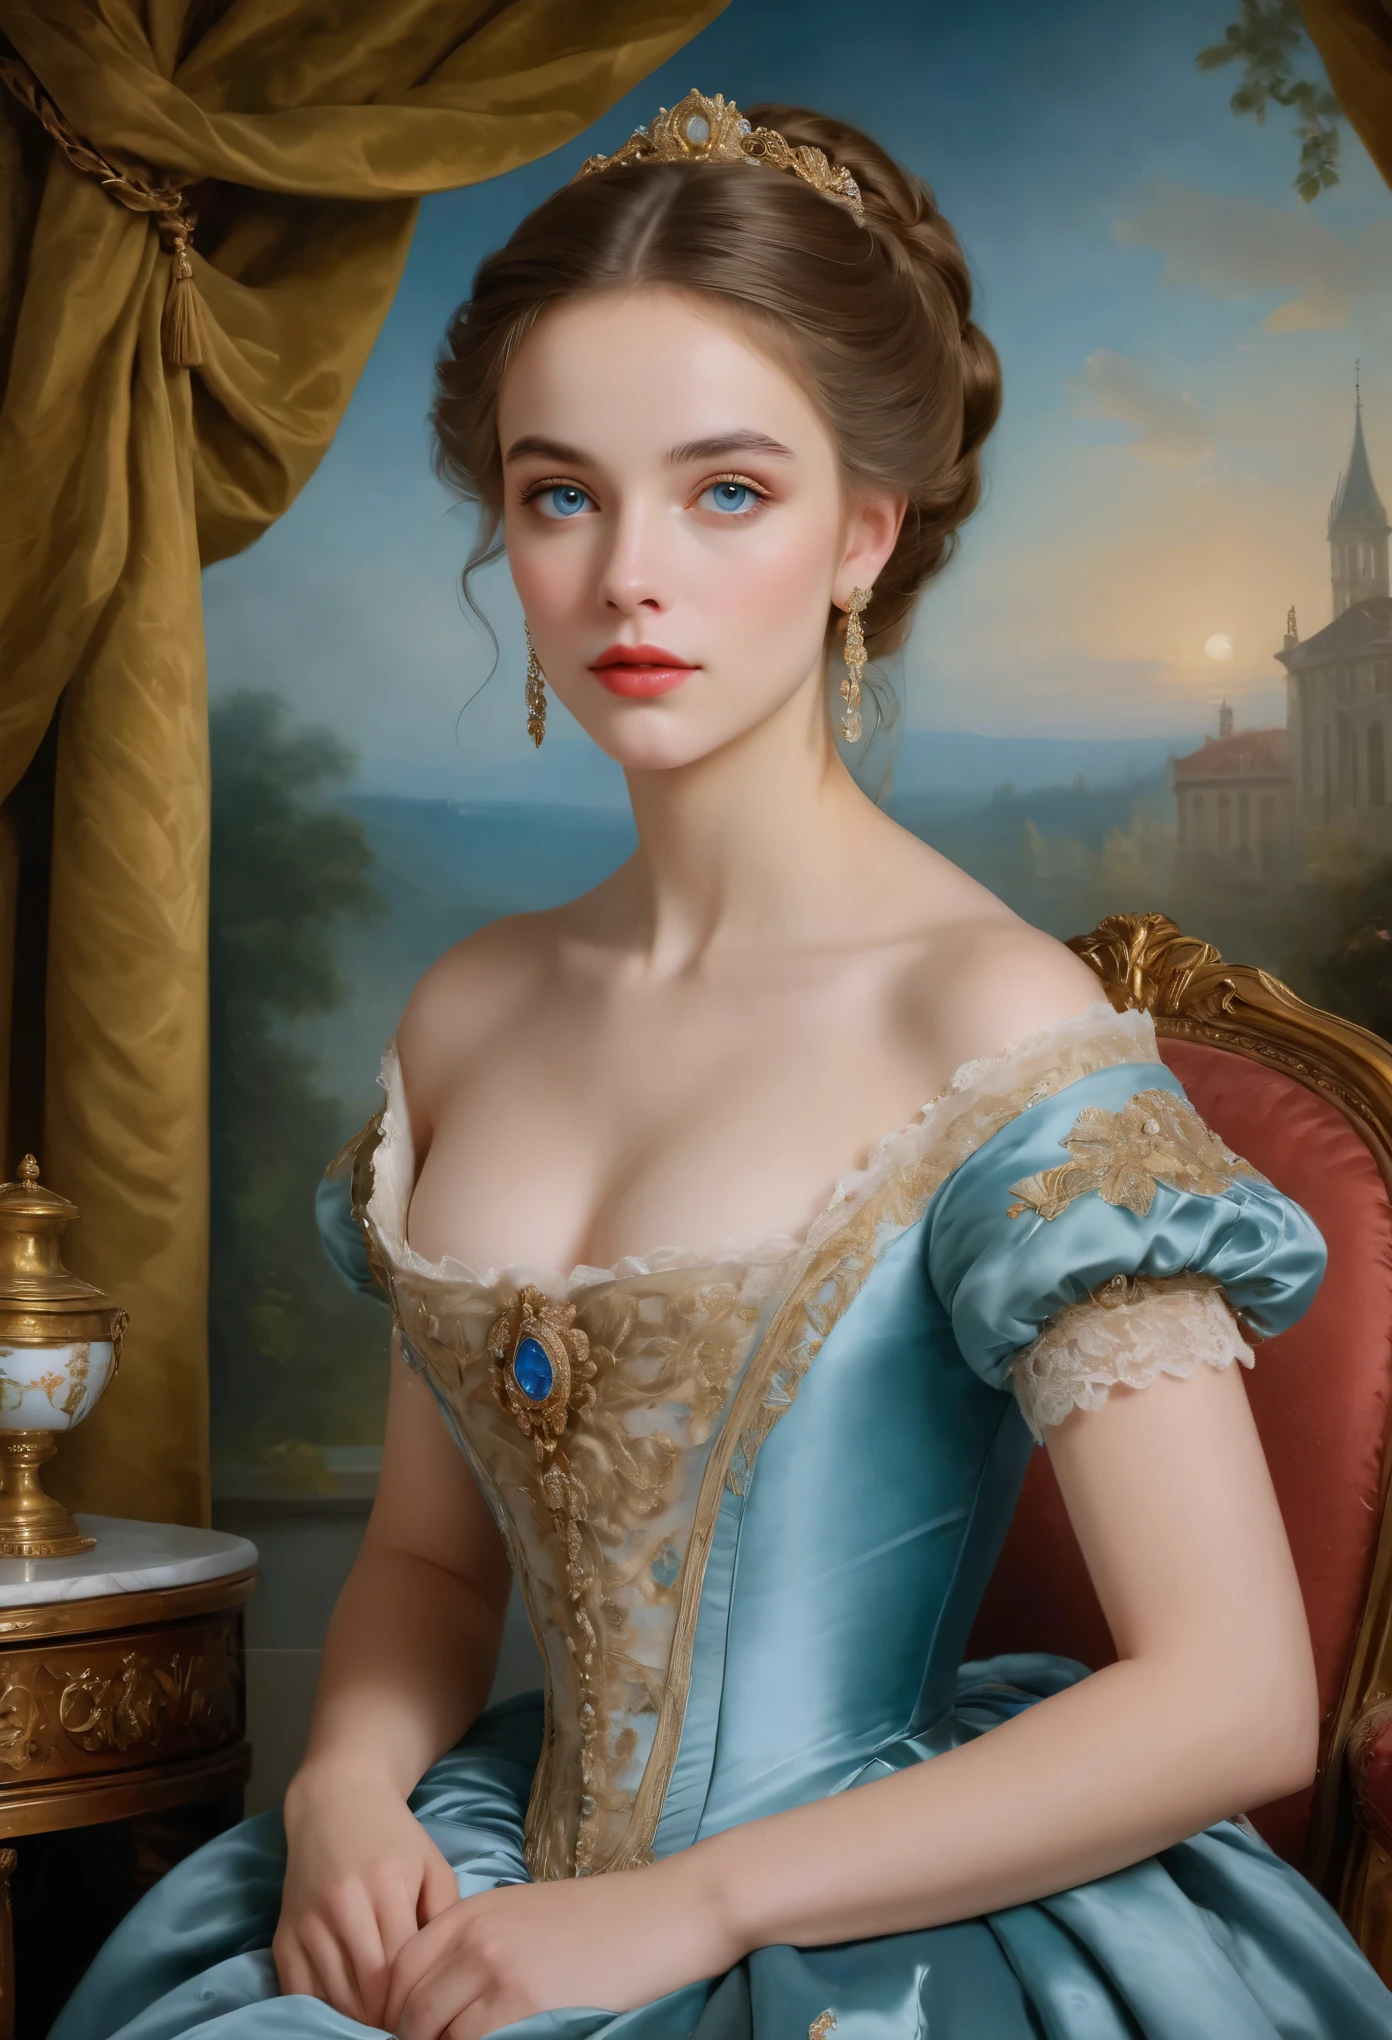 (高解像度,傑作:1.2),(現実的:1.37)比類のない美しさを持つ18世紀のフランス貴族の娘の肖像画. 彼女は魅惑的な青い目と繊細なバラ色の唇を持っています. 肖像画は細部まで丁寧に描かれています, 彼女の特徴の微妙なニュアンスを捉える. 彼女は美しいシルクのガウンを着ている, 複雑なレースと繊細な刺繍で飾られた. この絵は当時の豪華さを物語っている, 豪華なベルベットのカーテンと金色の家具を背景に. 照明は柔らかく拡散している, 少女の優美な美しさを強調する. 色は鮮やかで豊かです, 魅力的な視覚体験を創造する. この肖像画は古典的な肖像画のスタイルで描かれている, 当時の有名な芸術家の作品を彷彿とさせる. それは優雅さを醸し出しています, グレース, 洗練さと.